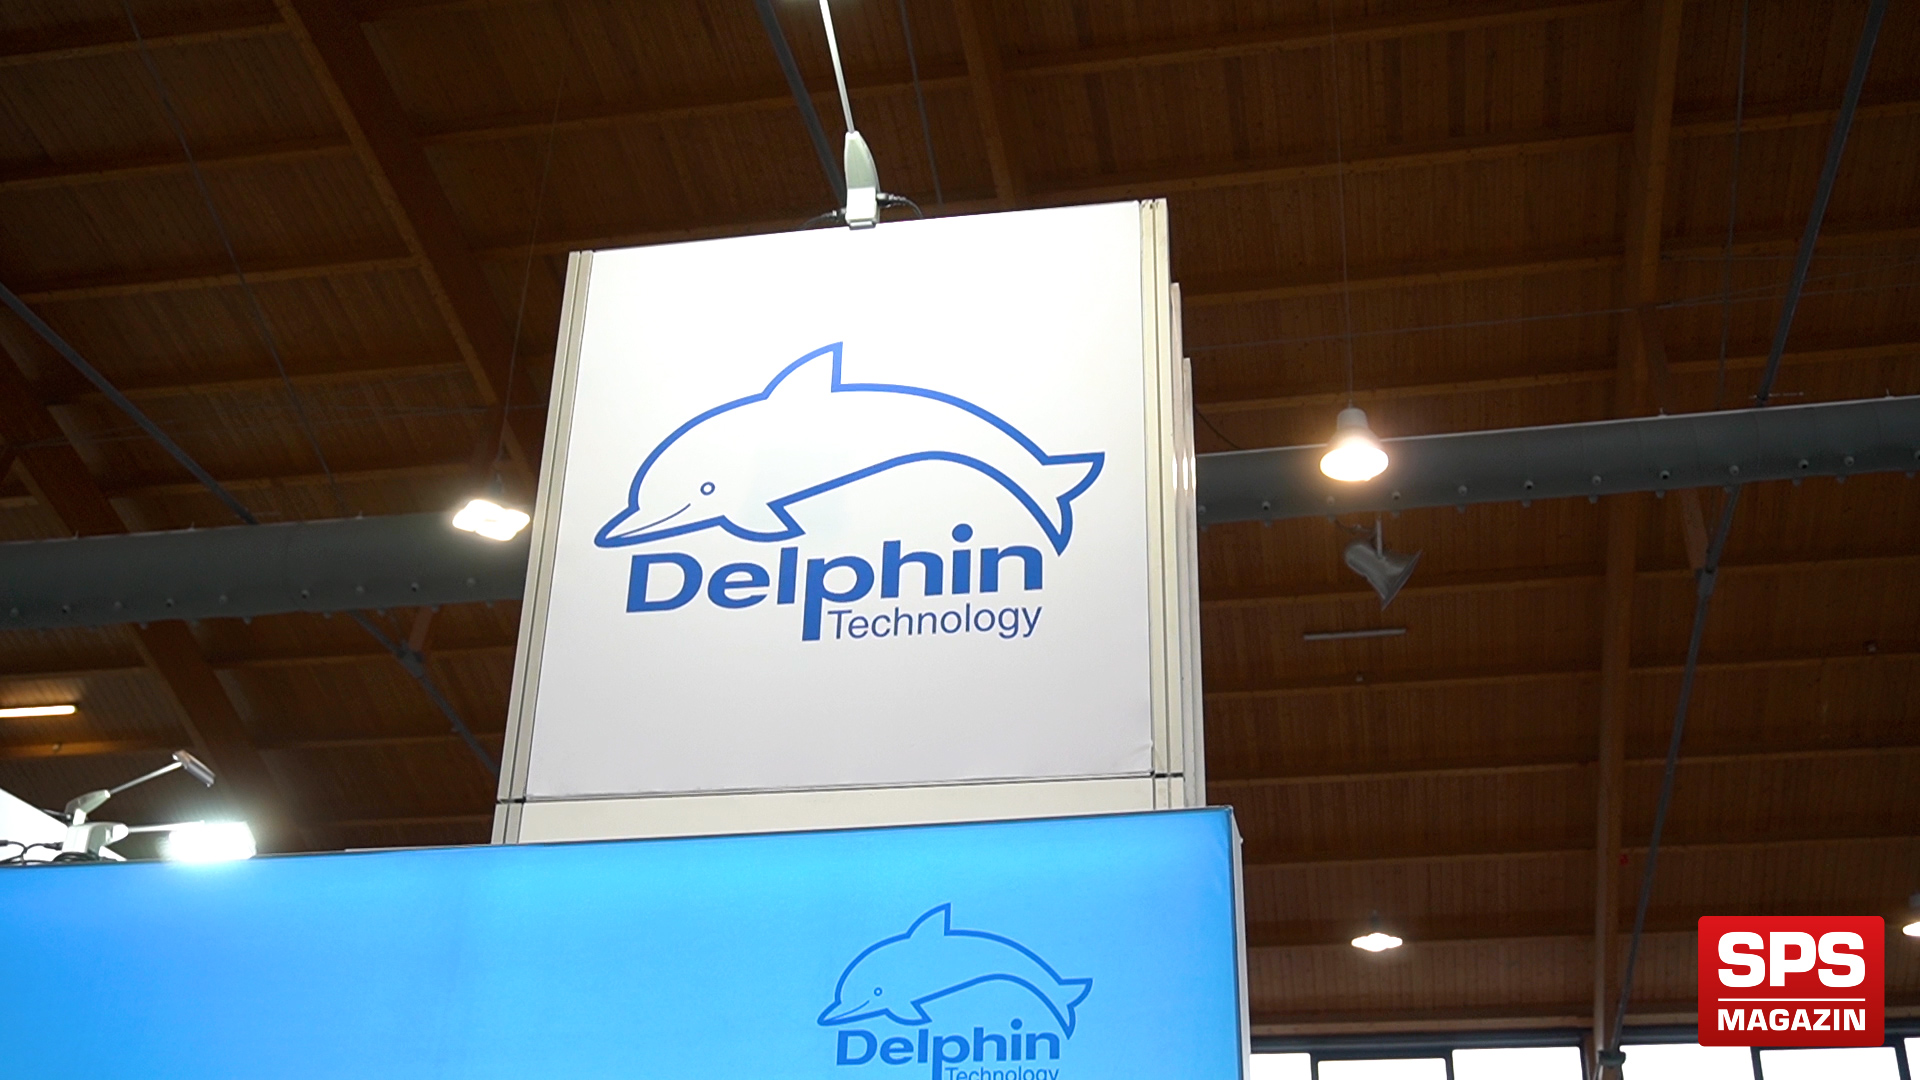 SPS-MAGAZIN auf der AAA Friedrichshafen zu Besuch bei Delphin Technology